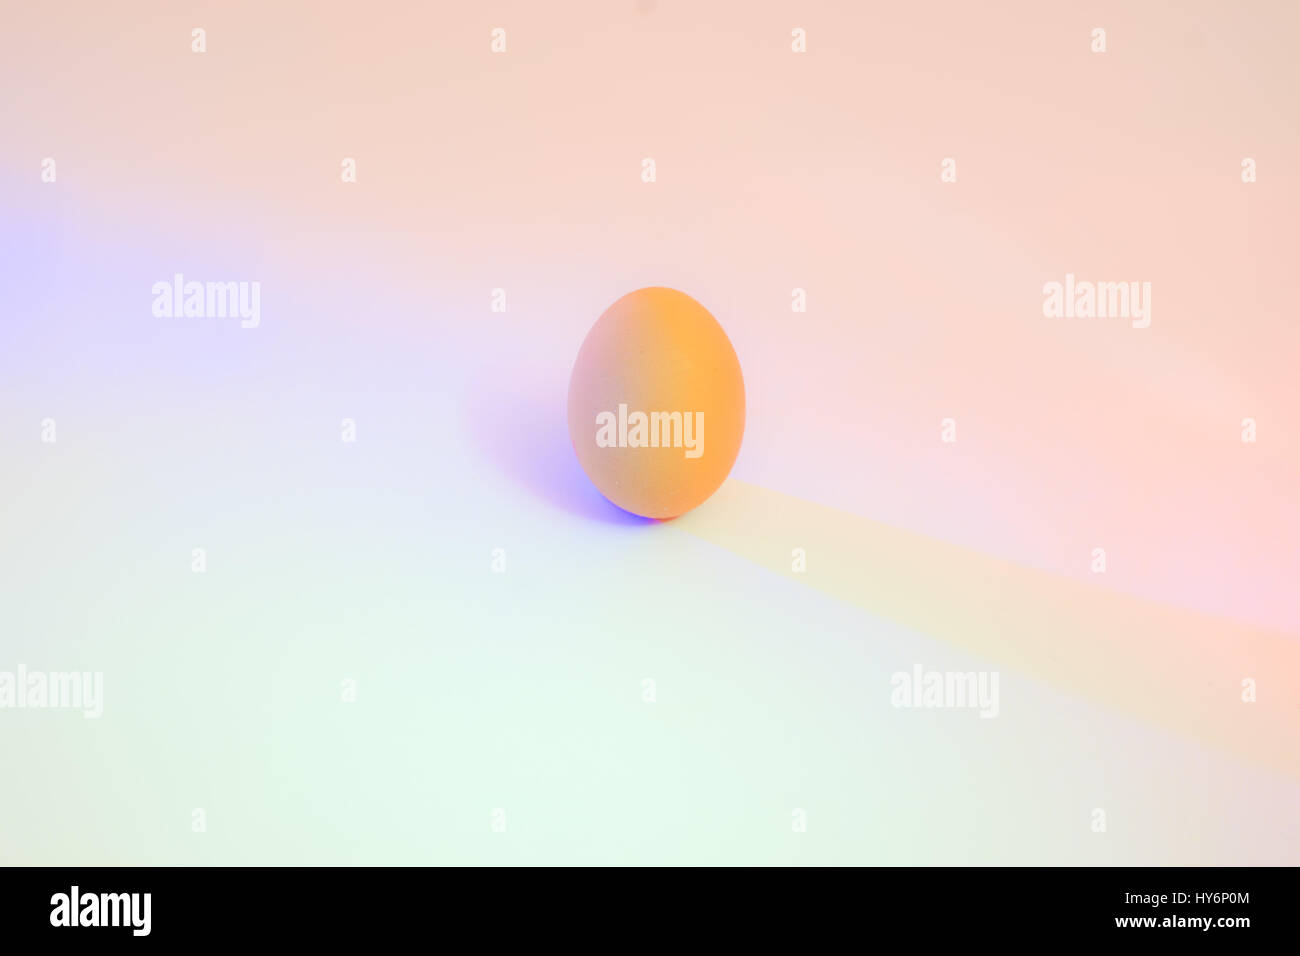 Huhn Eiern auf einem weißen Hintergrund durch bunte - einem pastellfarbenen Hintergrund beleuchtet zart Stockfoto